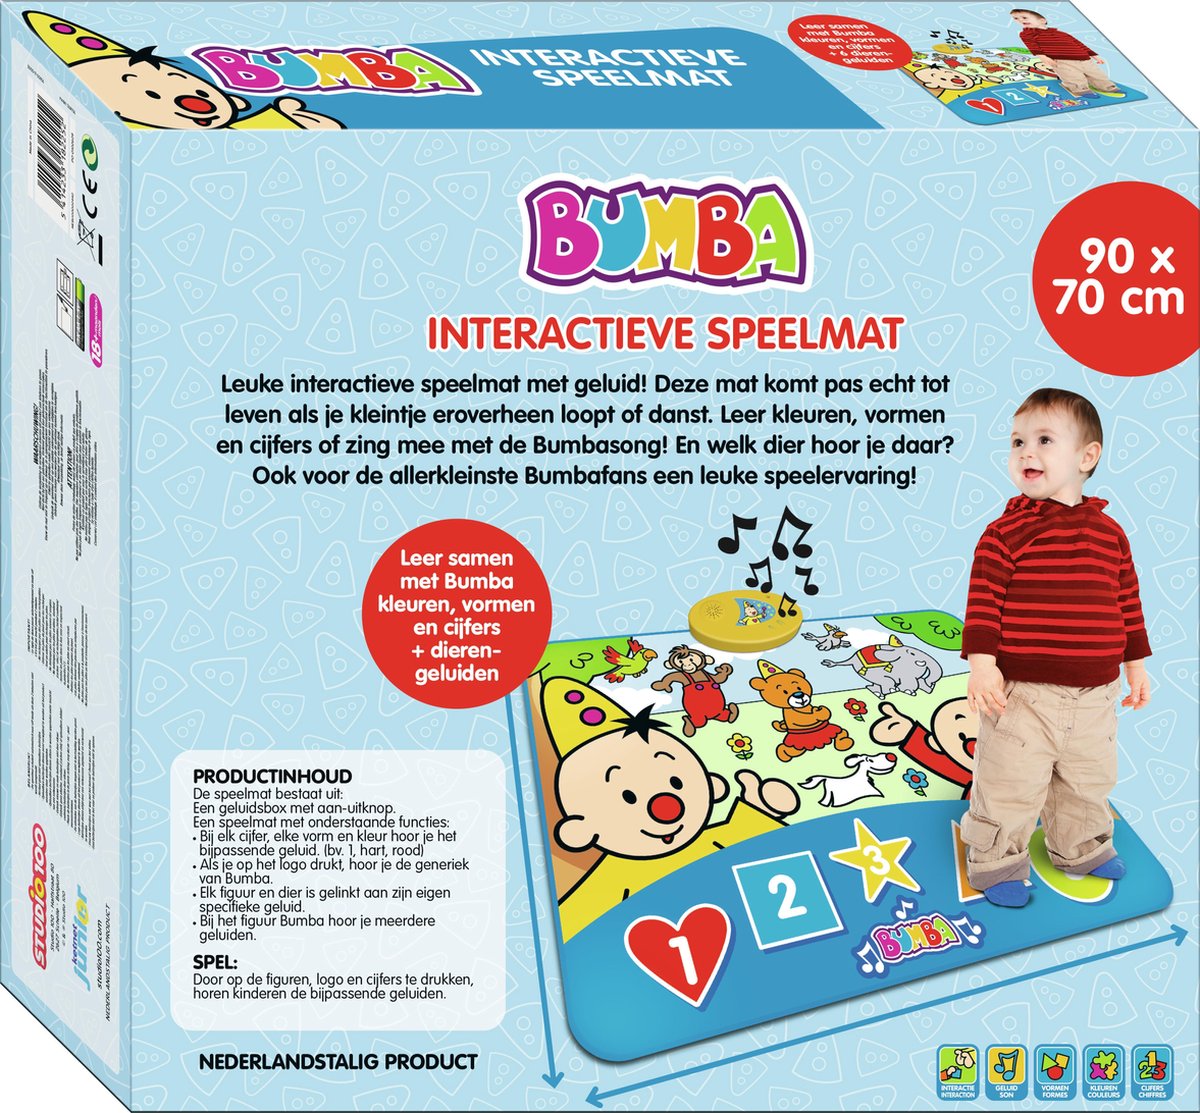 Smash Slink boezem Bumba Speelkleed - Interactieve speelmat 90 x 70 cm - 6 dierengeluiden |  bol.com